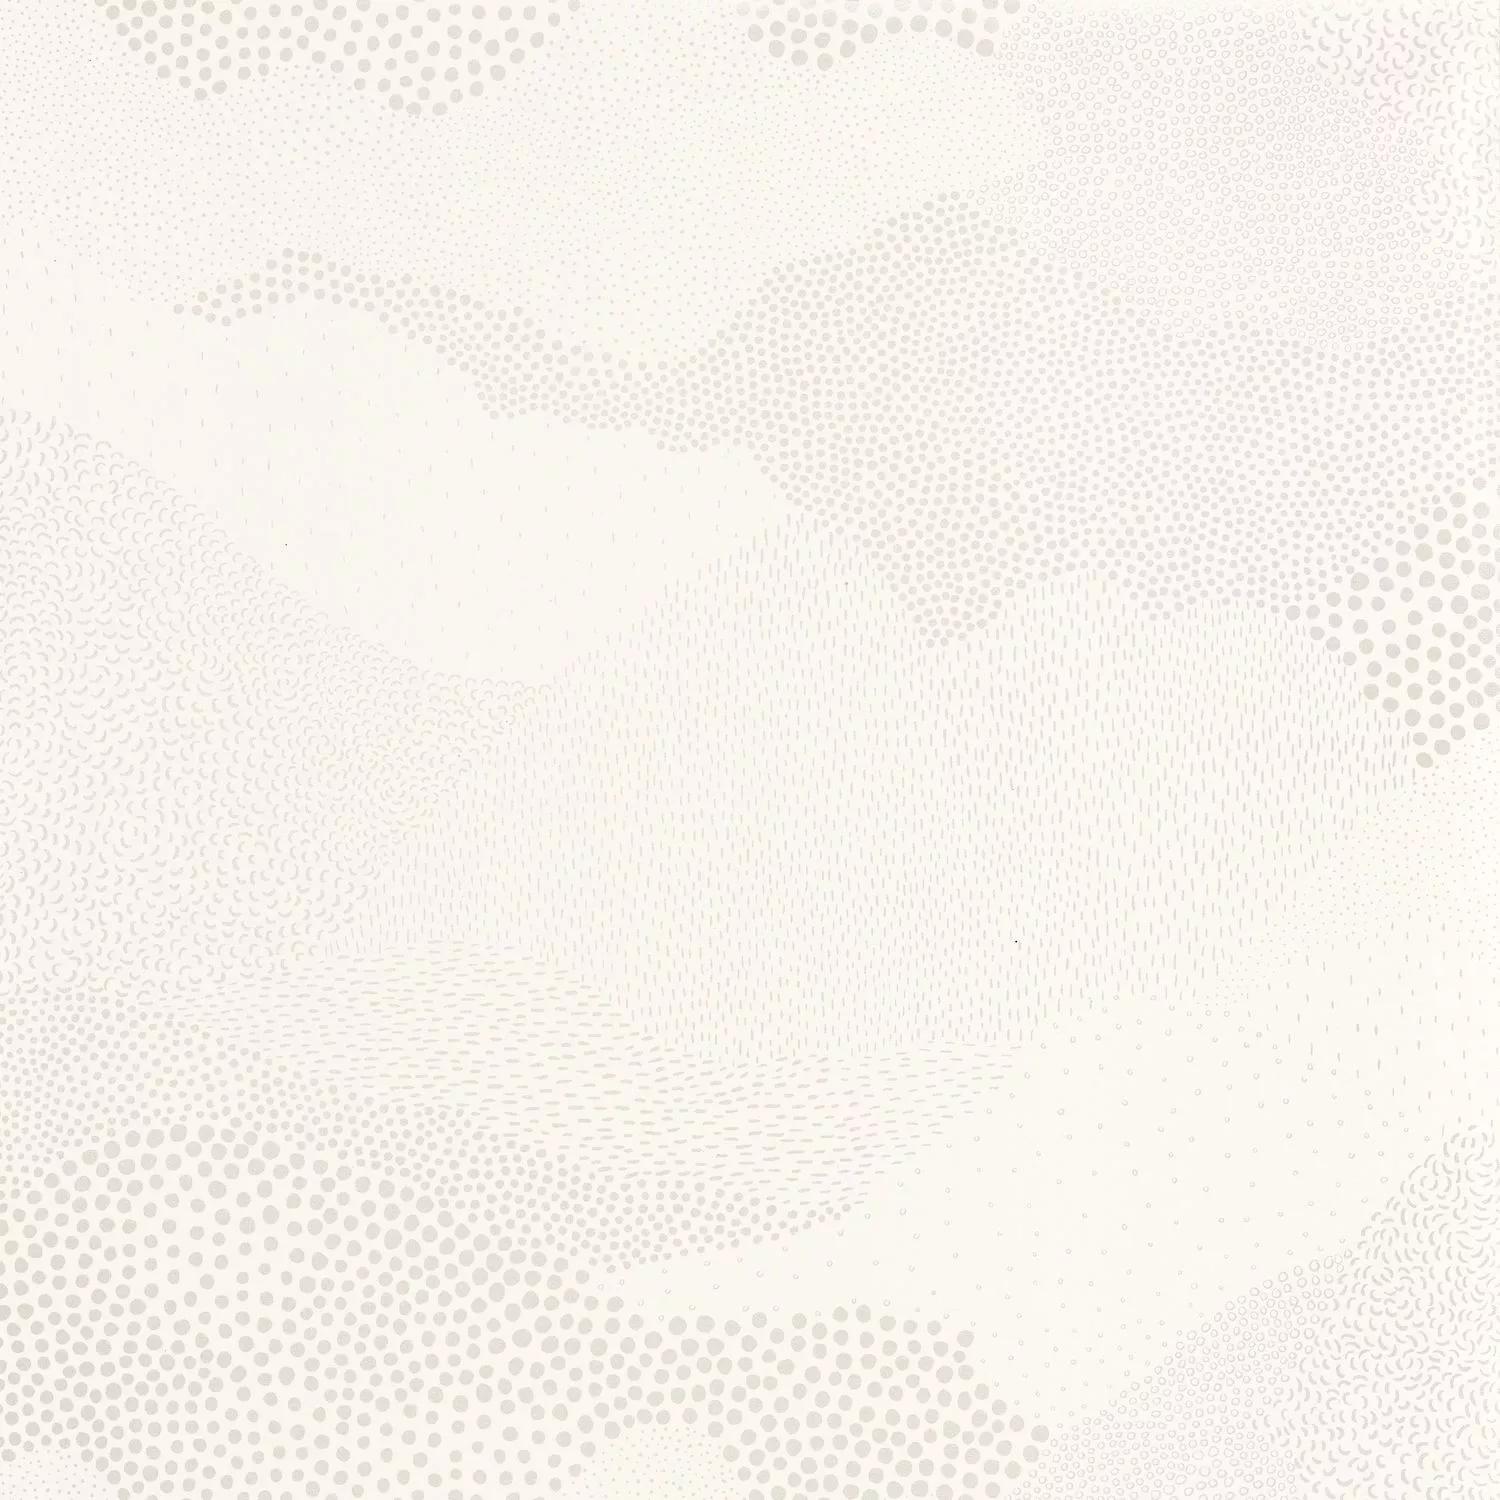 Fehér hullám mintás vlies design tapéta apró pöttyözött hullám mintával